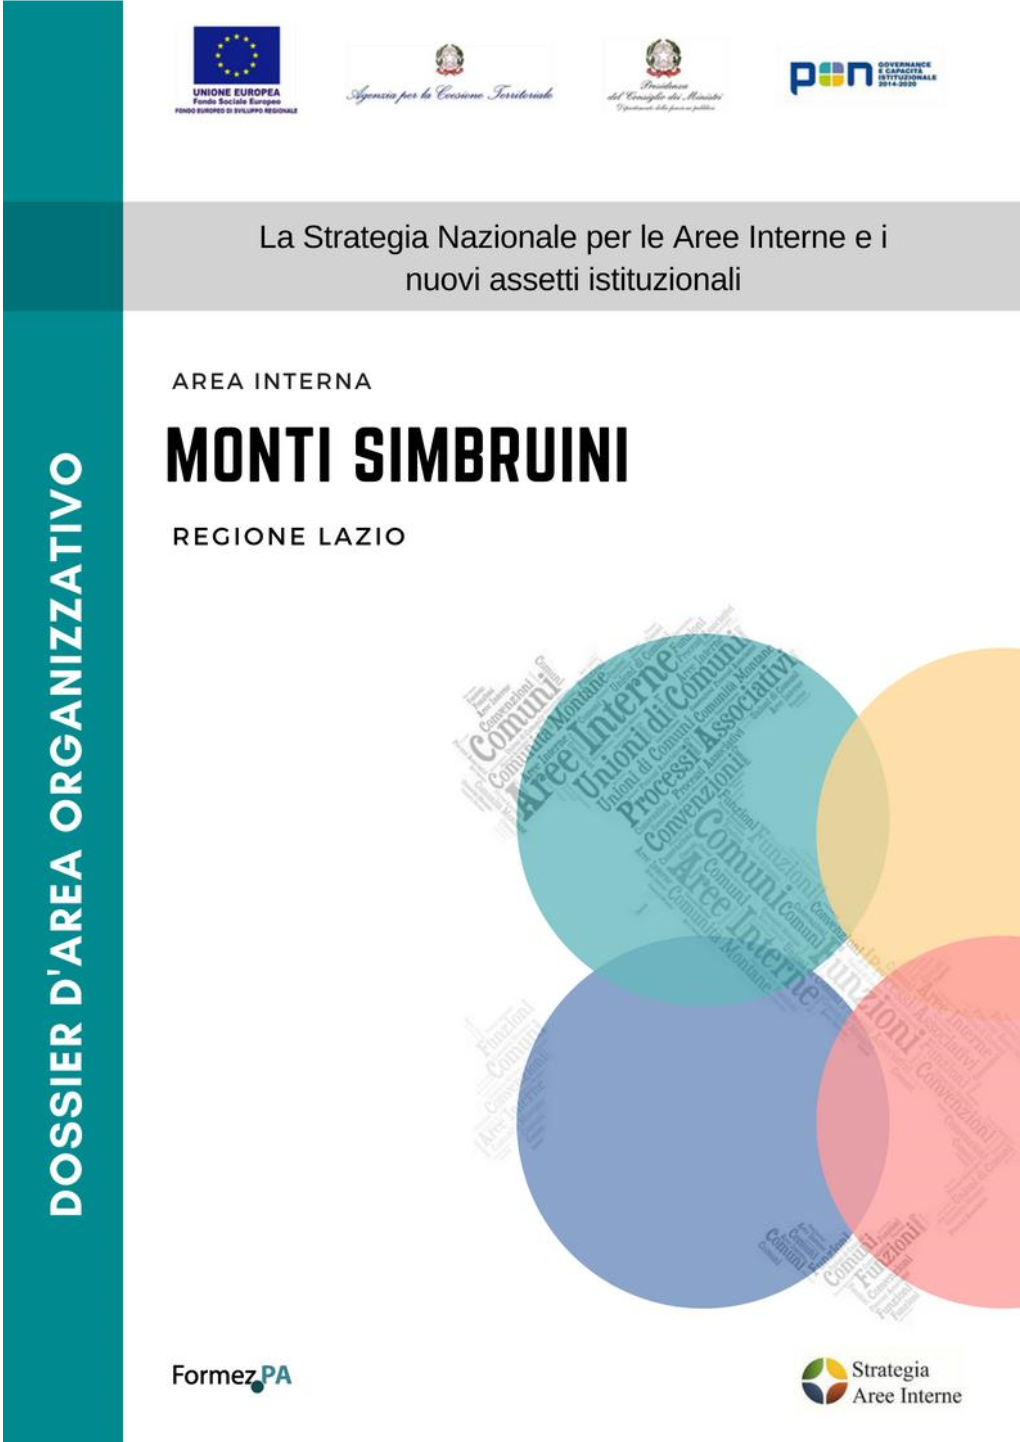 Monti Simbruini (Regione Lazio)